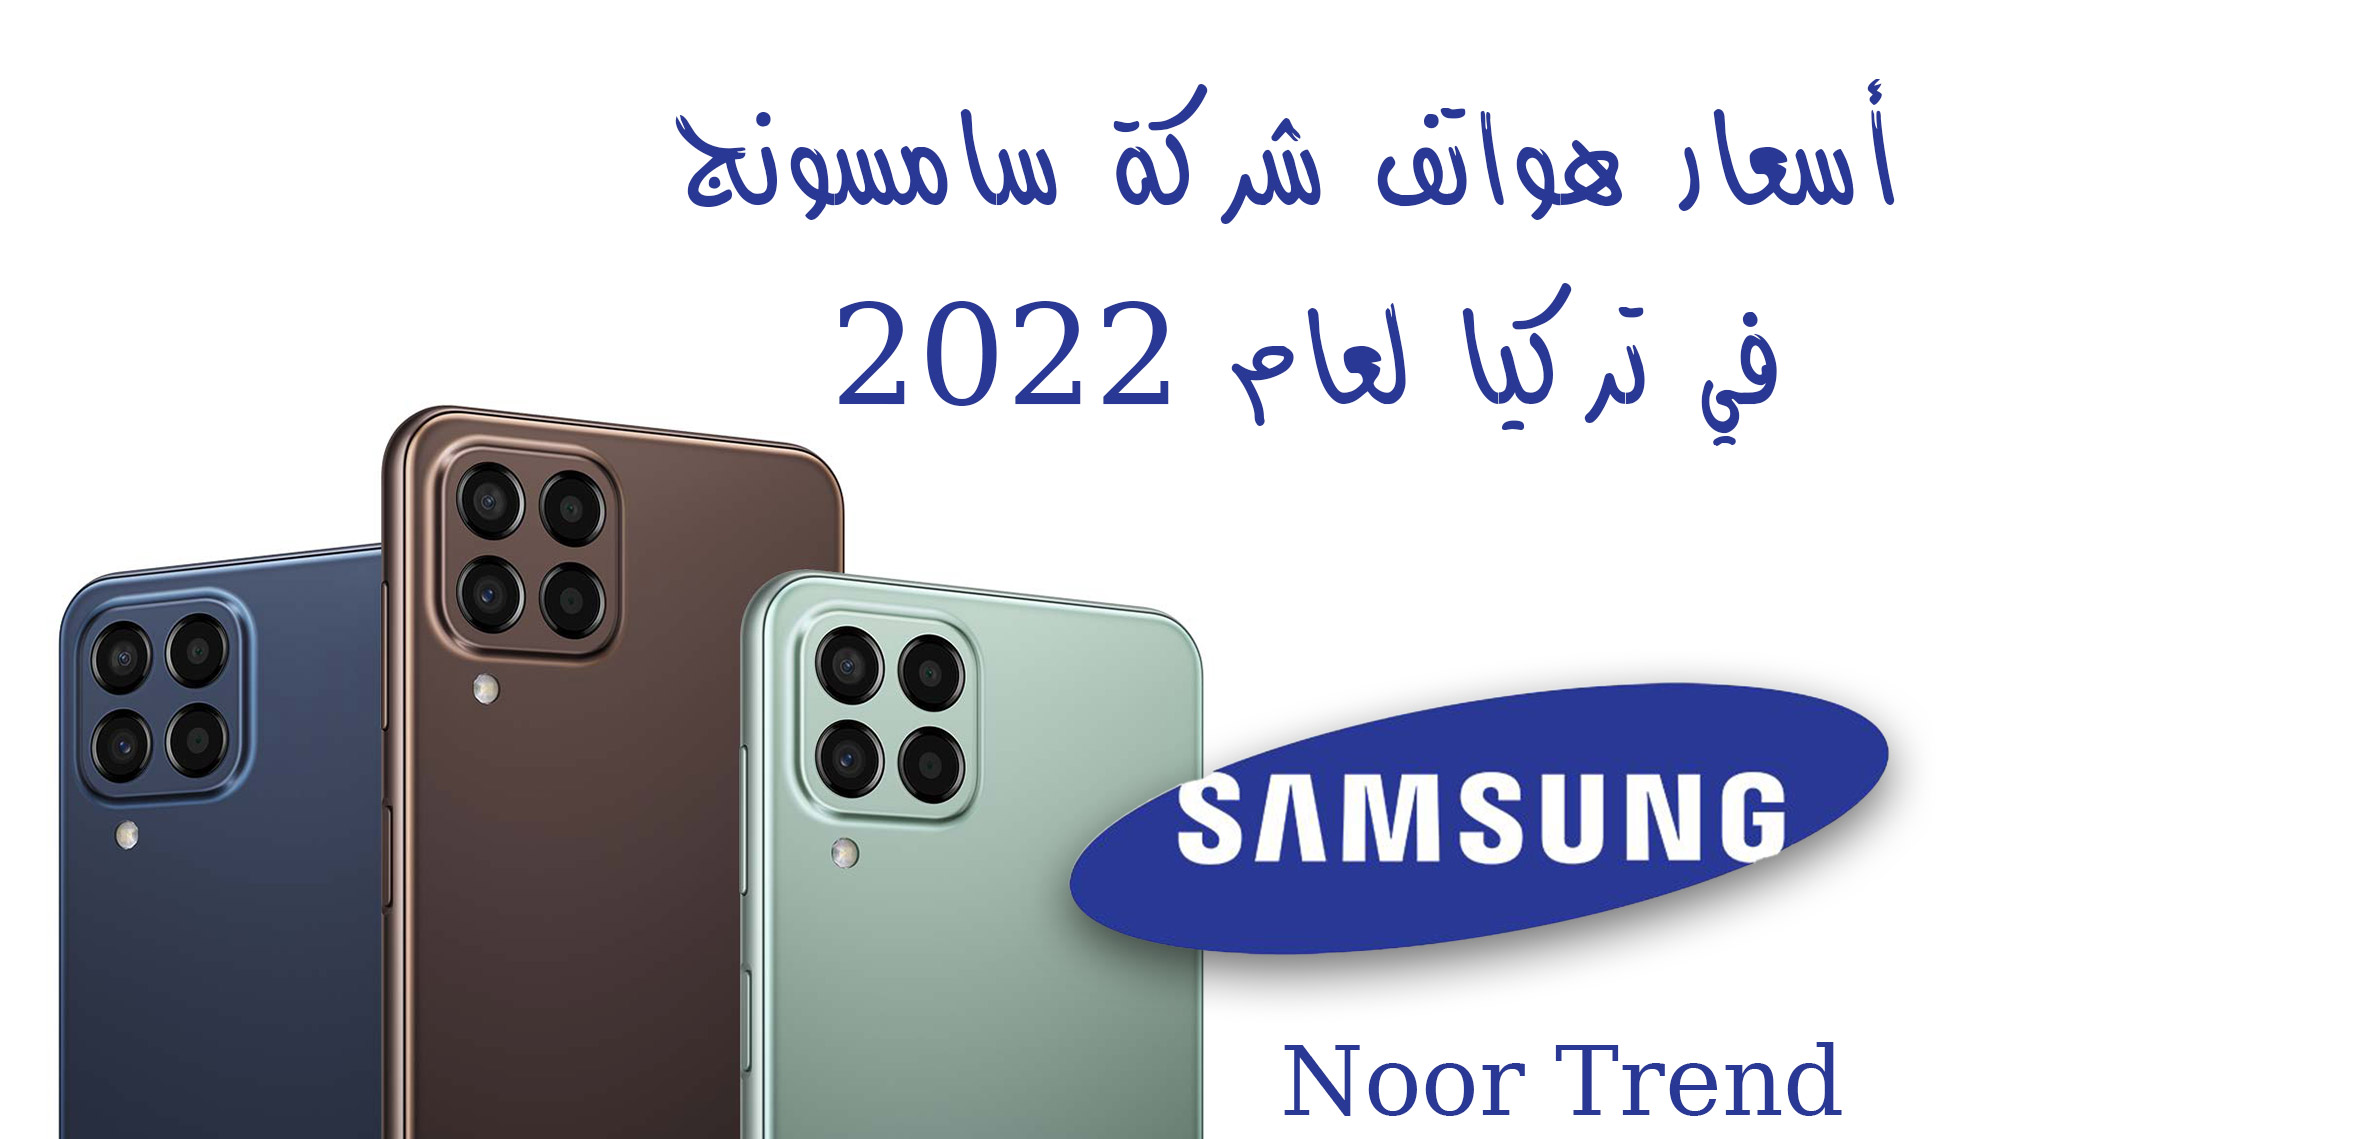 أسعار هواتف شركة سامسونج في تركيا لعام 2022